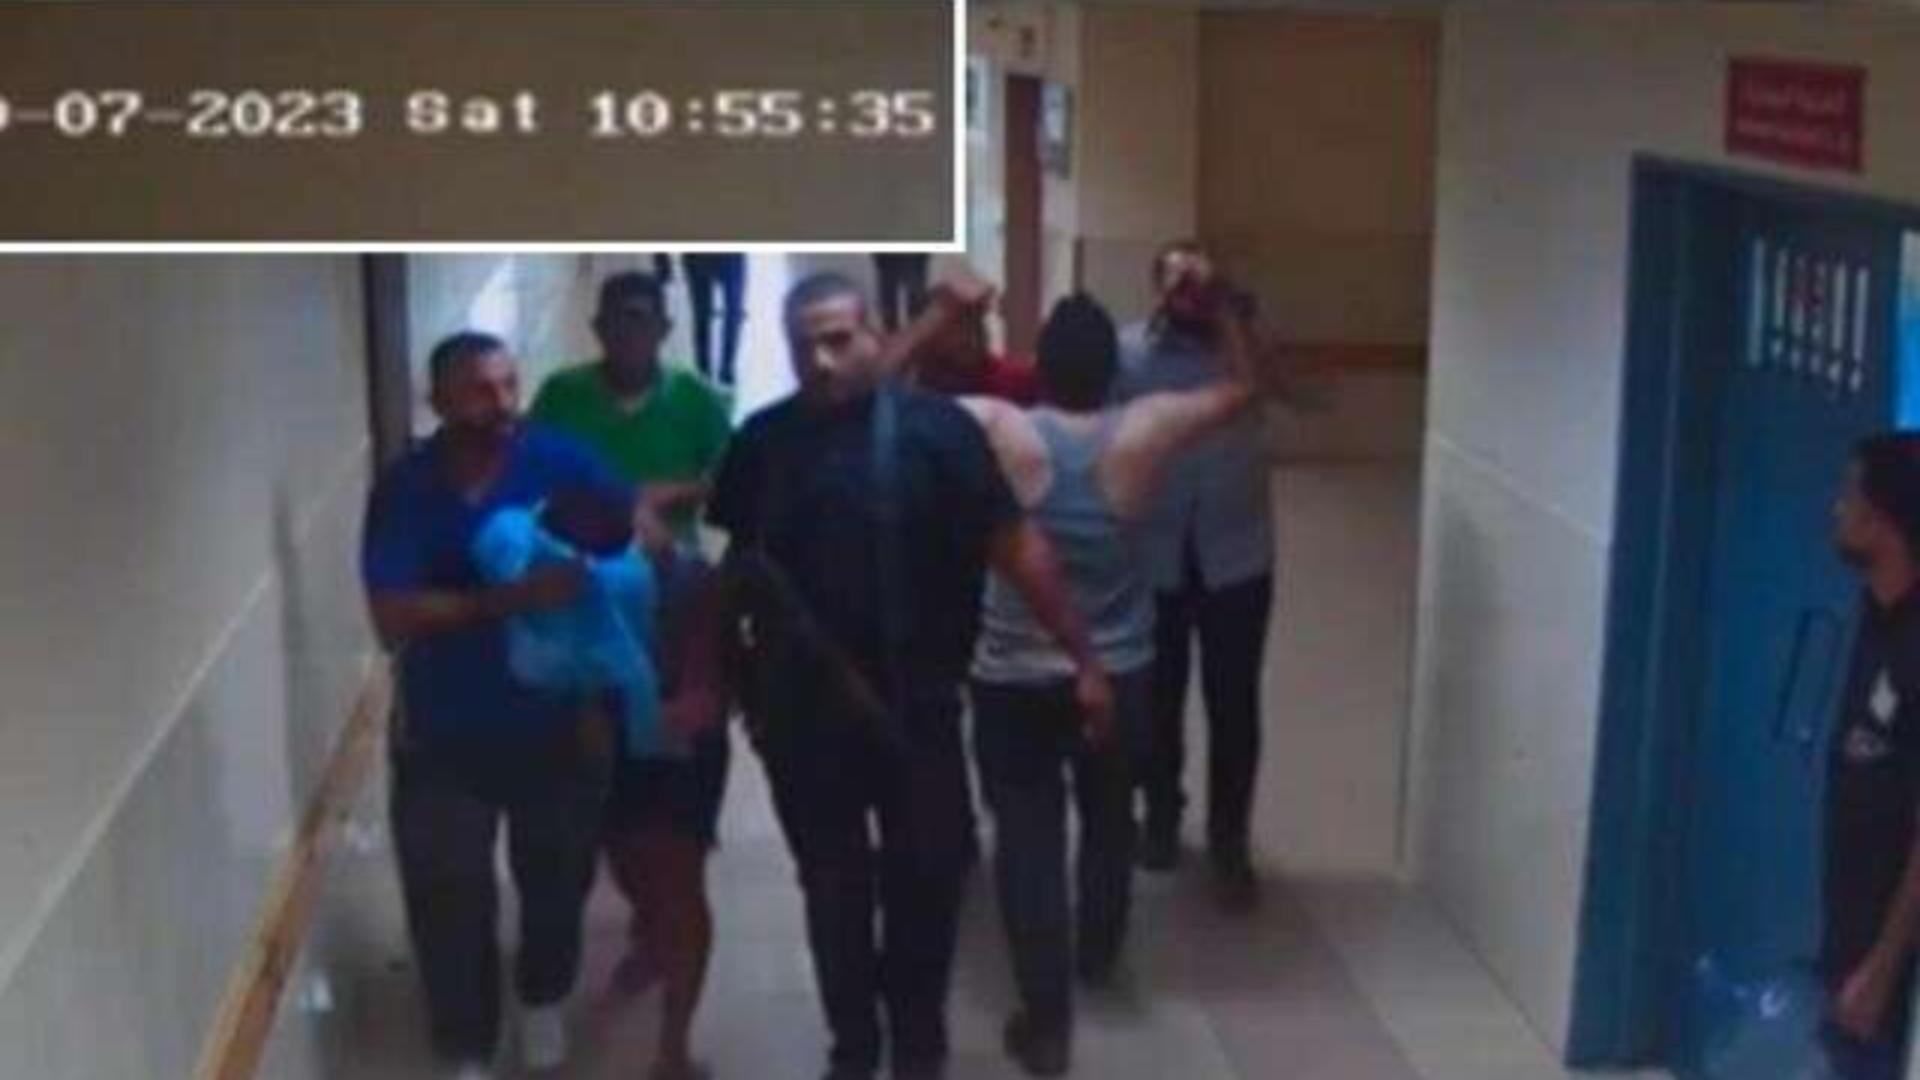 Război Israel-Hamas. Armata israeliană publică imagini video în care afirmă că se văd ostatici duşi în spitalul Al Shifa